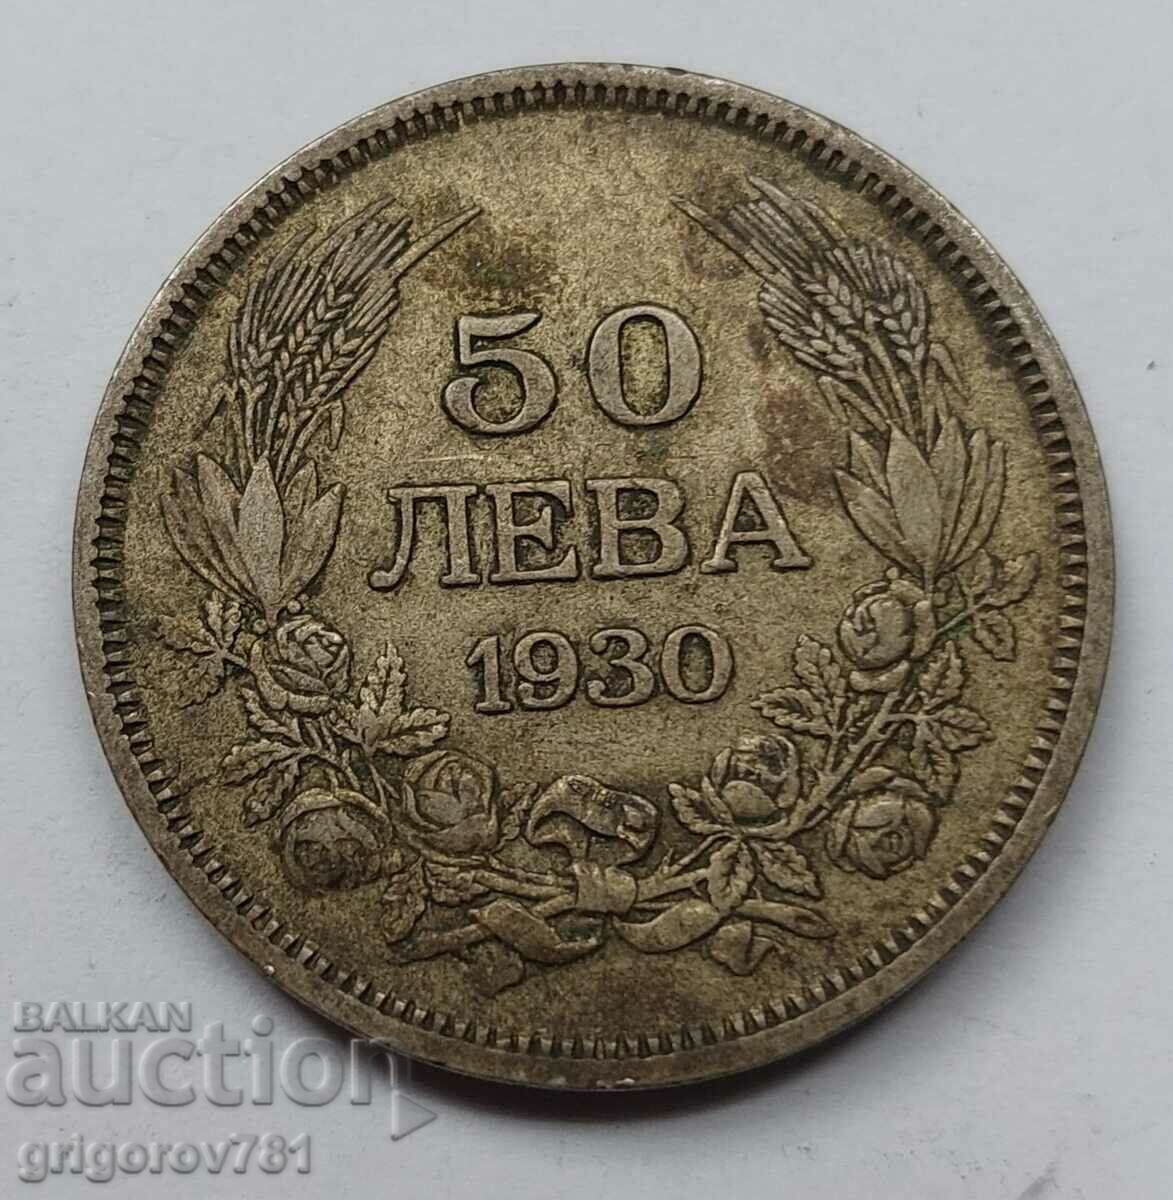 Ασήμι 50 λέβα Βουλγαρία 1930 - ασημένιο νόμισμα #75